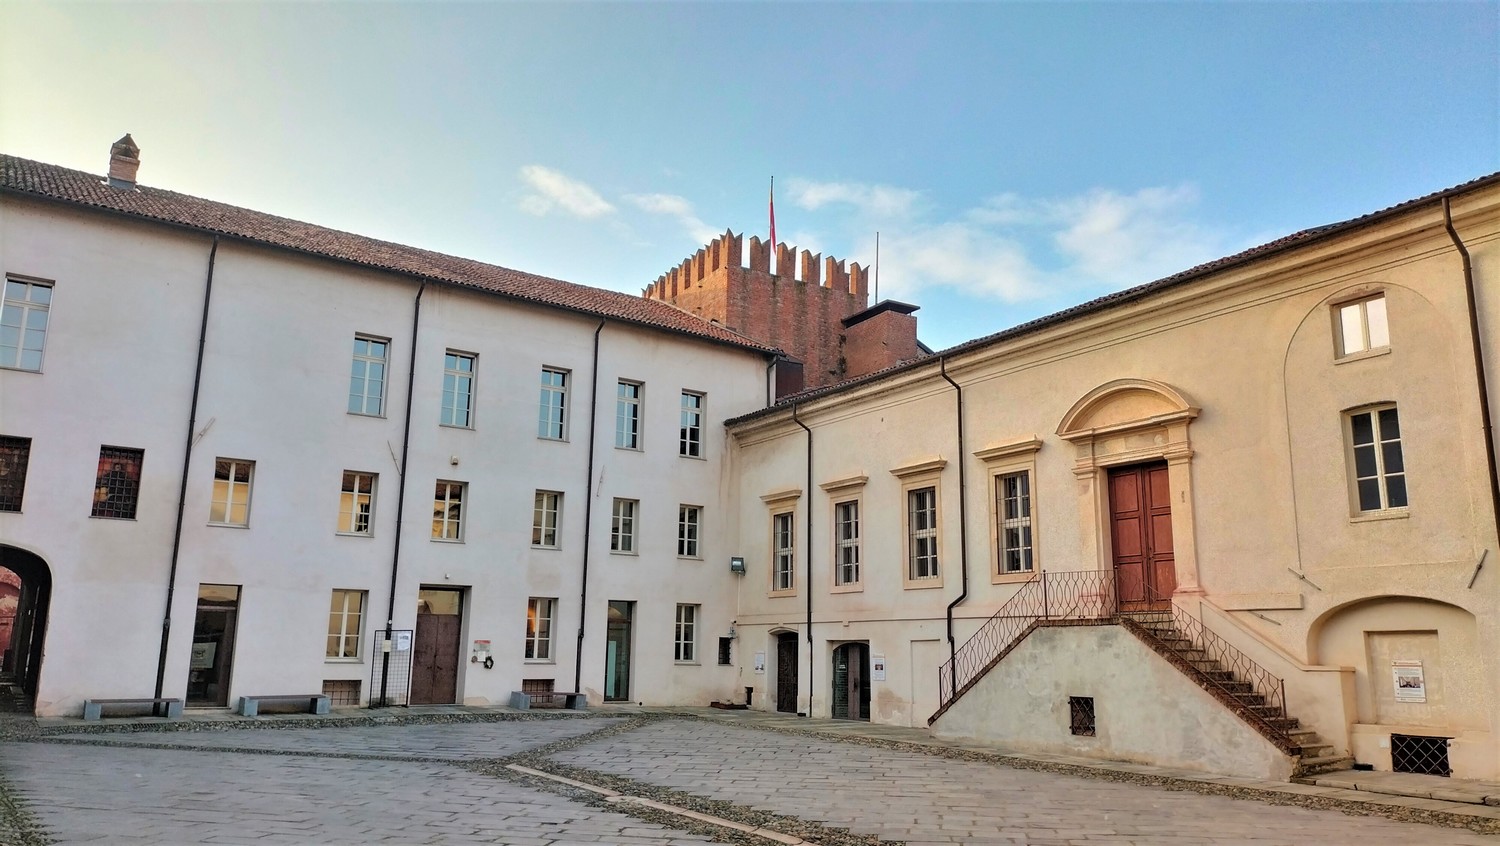 Casale Monferrato: al Castello del Monferrato è protagonista l’arte